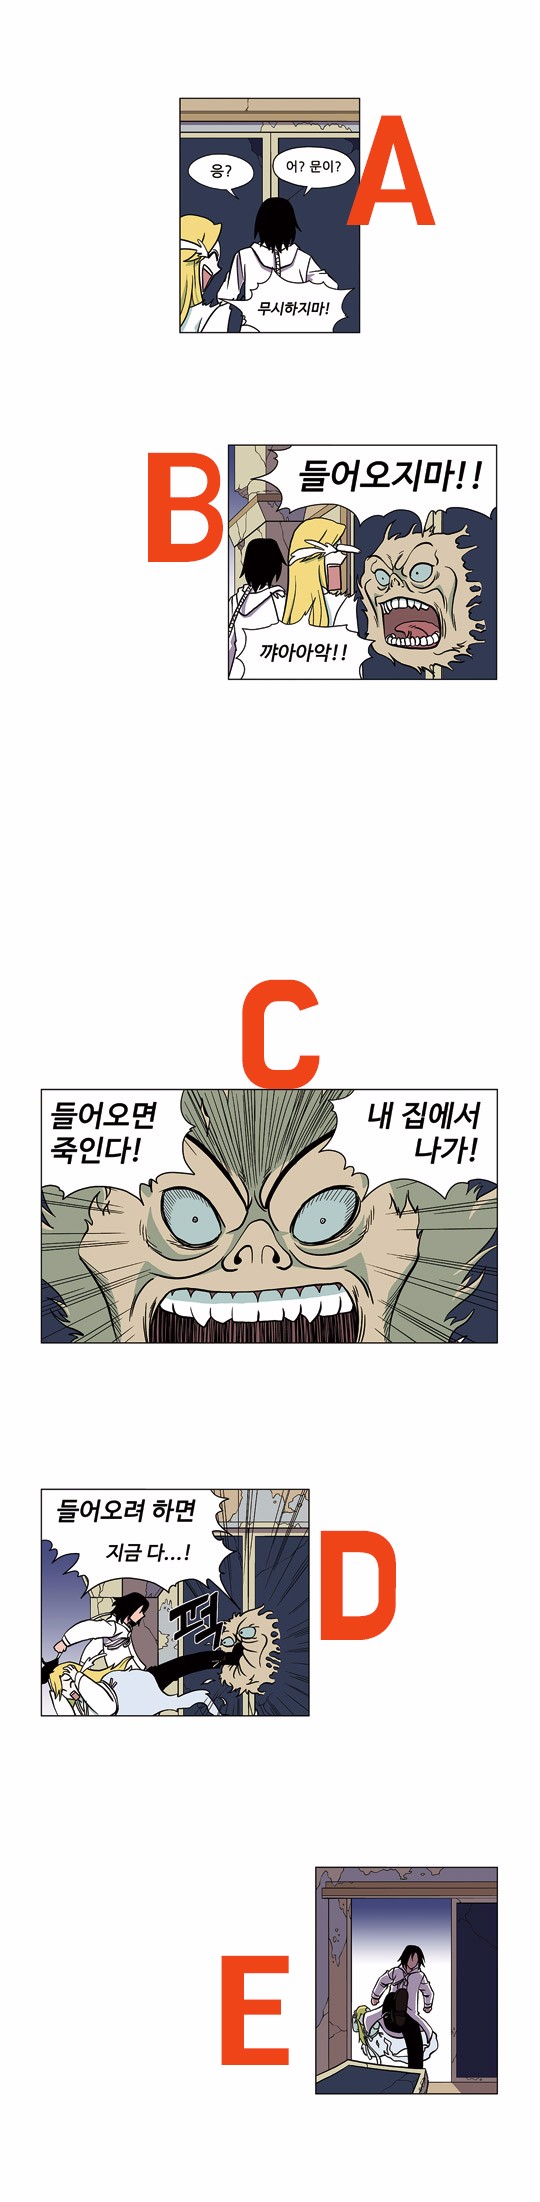 한국웹툰 표절시비.jpg